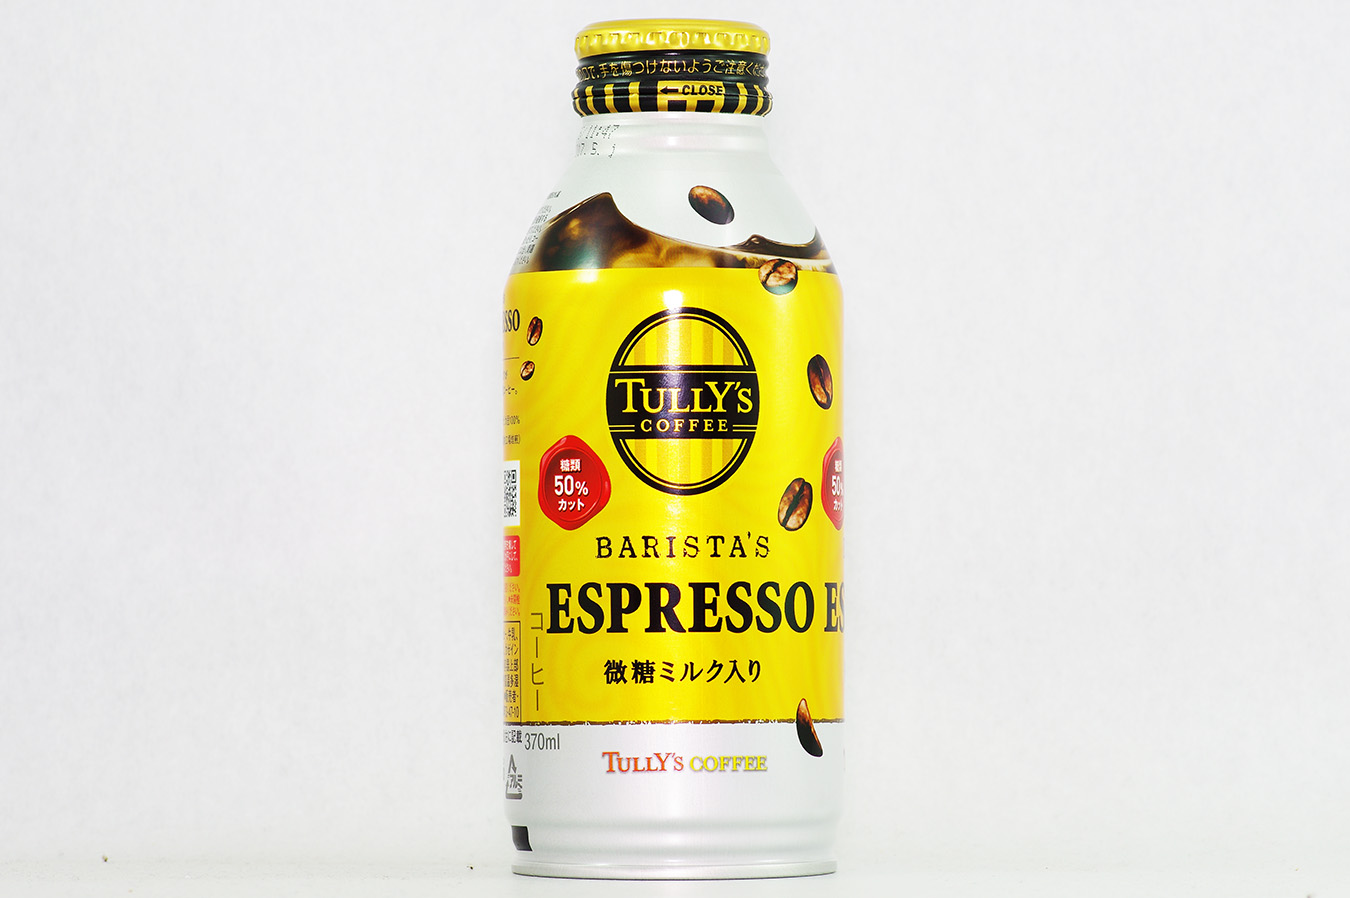 TULLY'S COFFEE BARISTA'S ESPRESSO